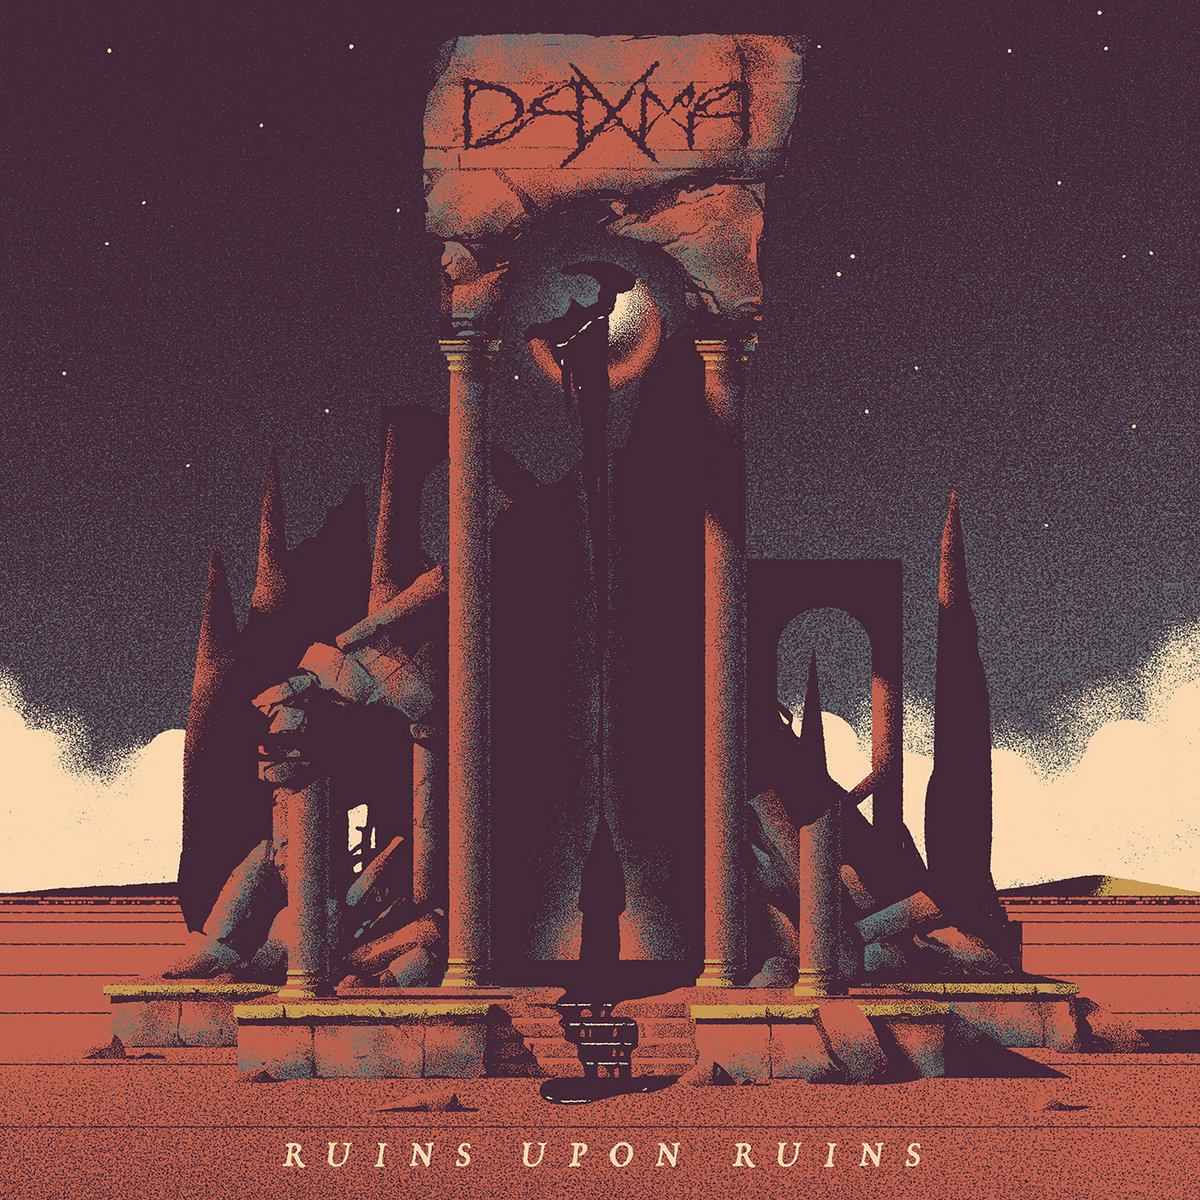 Daxma---Ruins-Upon-Ruins